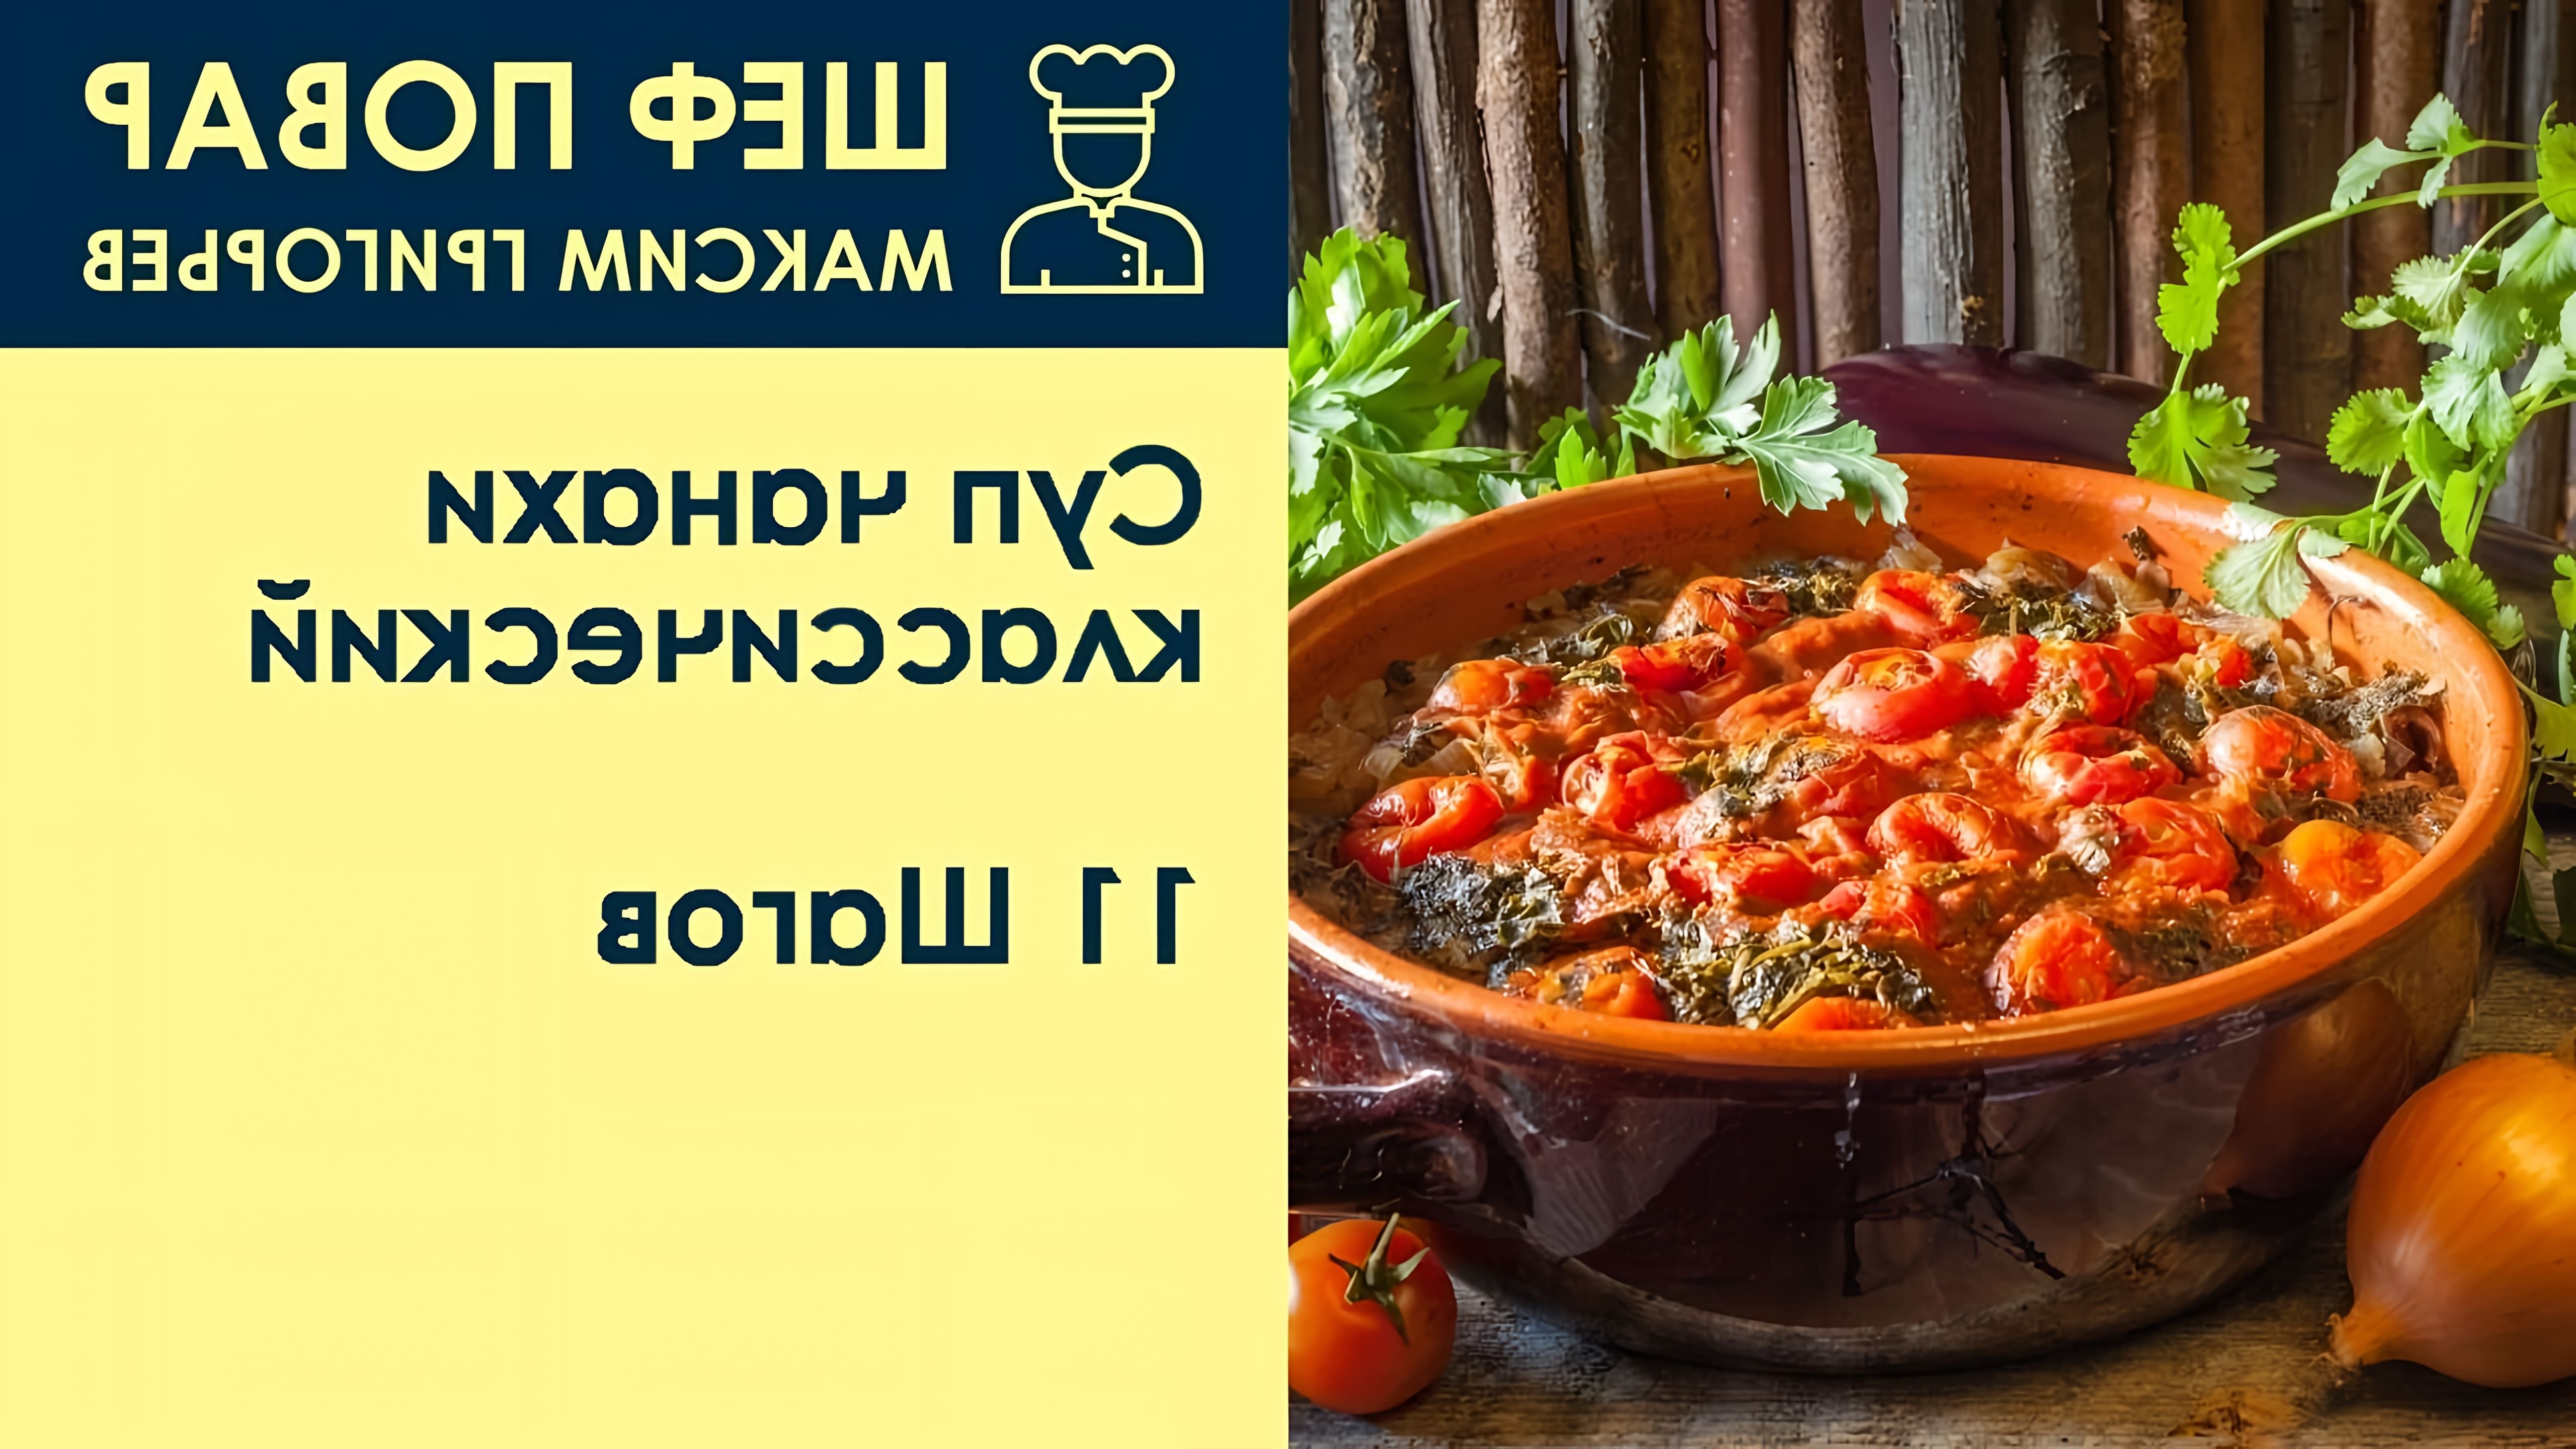 В данном видео шеф-повар Максим Григорьев демонстрирует рецепт приготовления классического супа "China Hi" из баранины